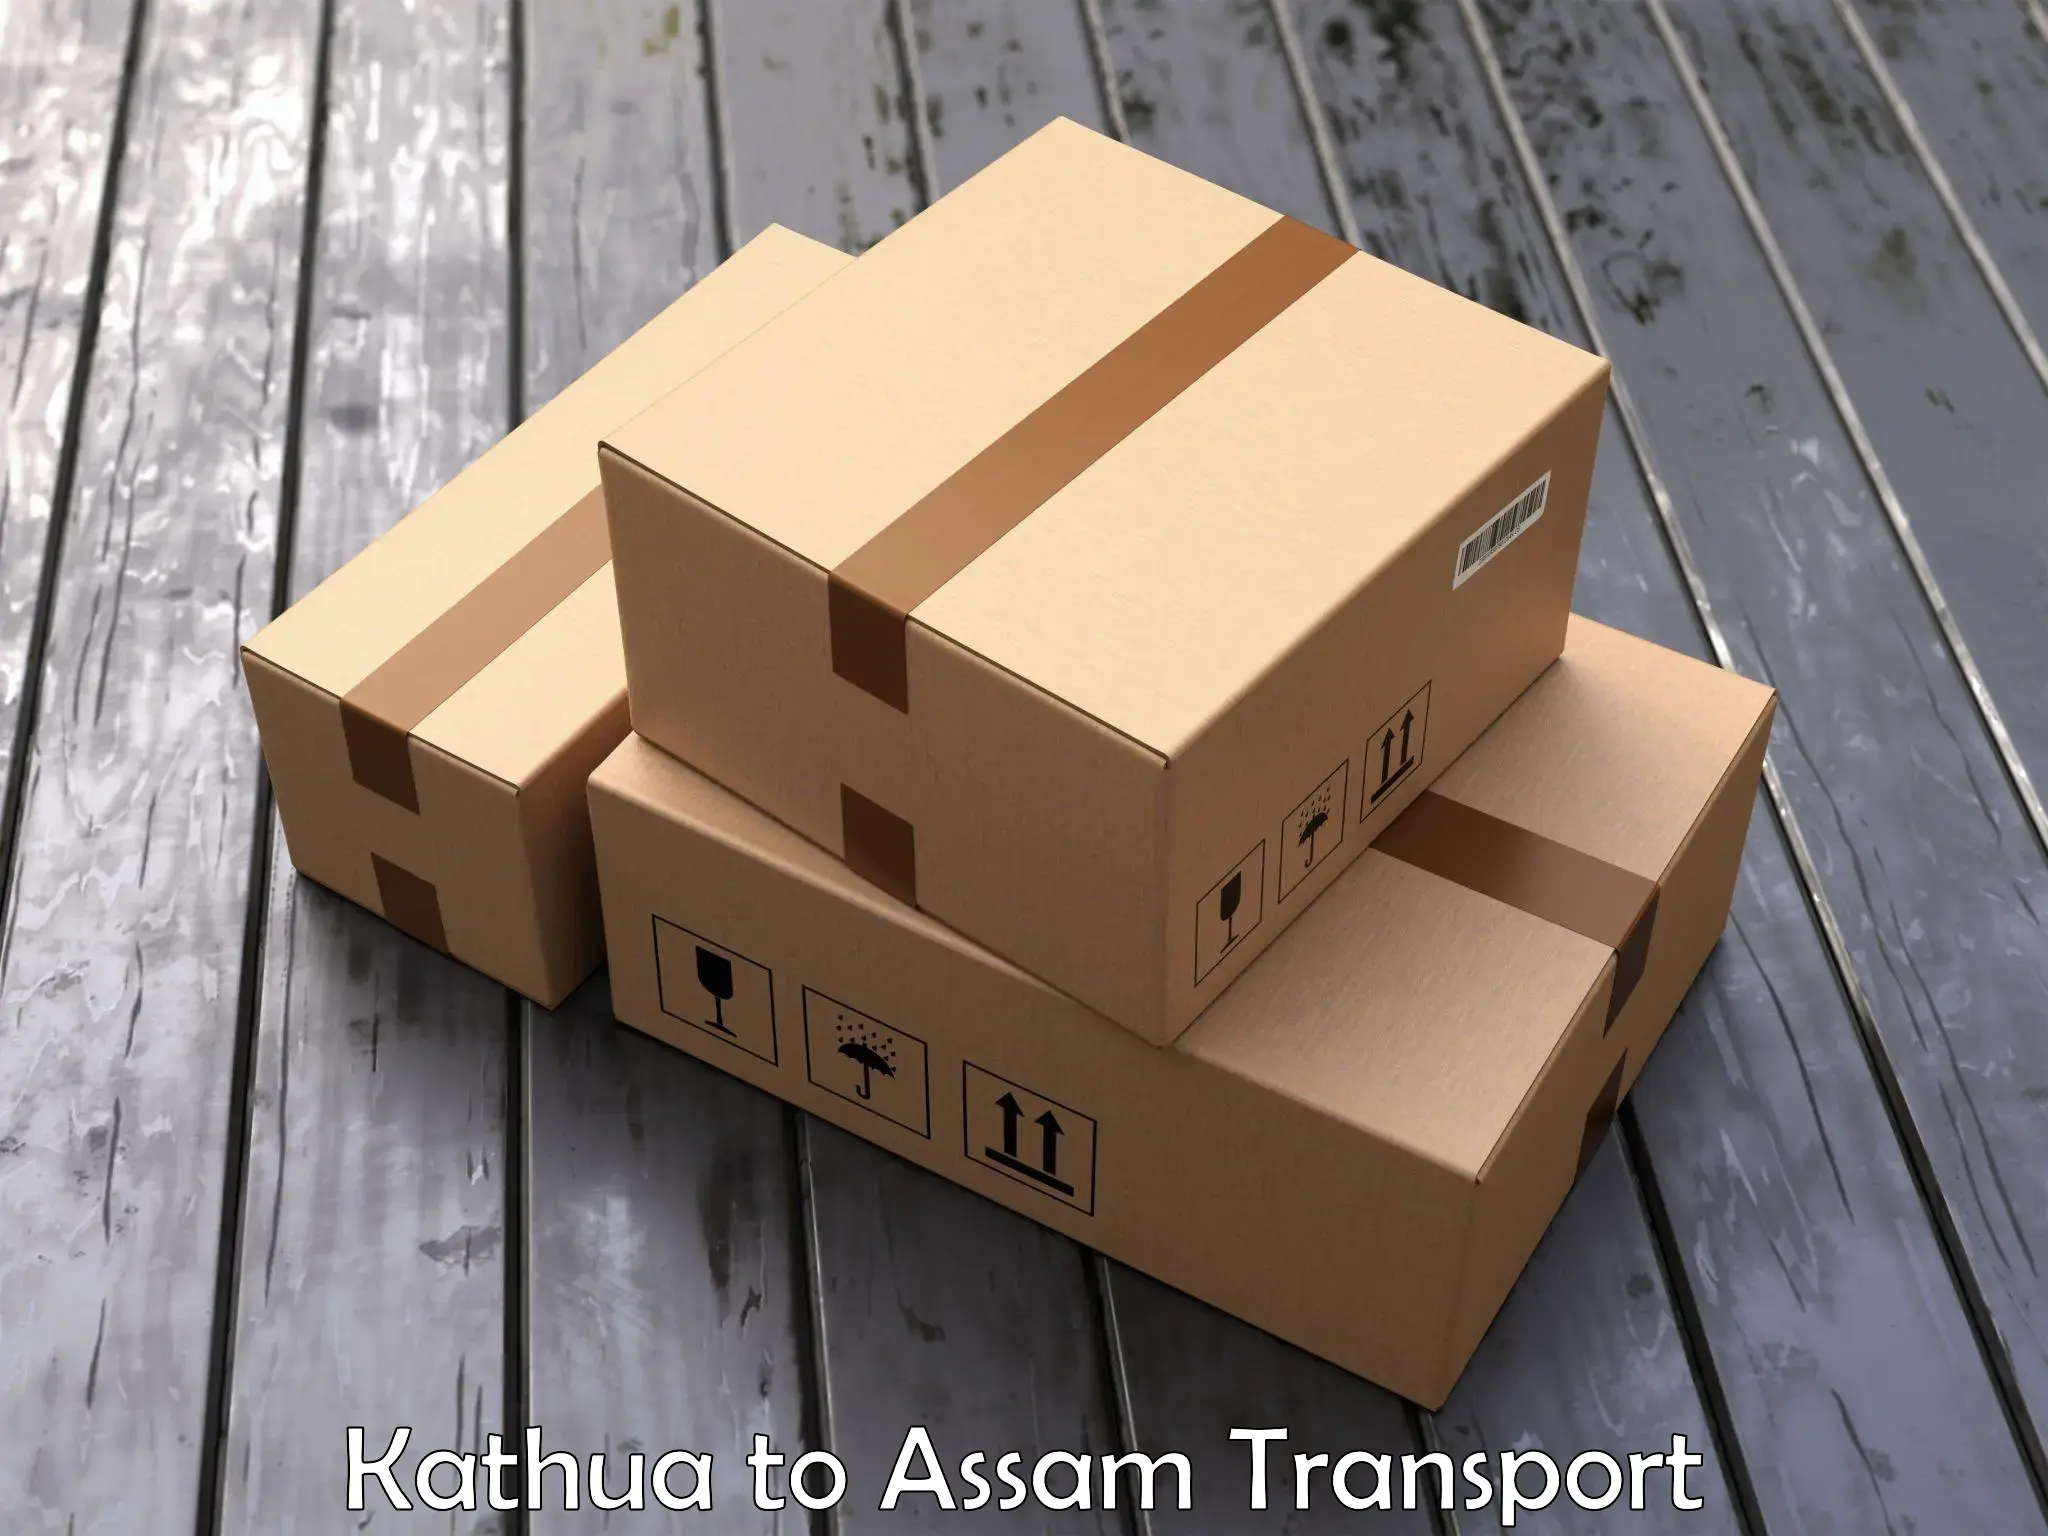 Two wheeler parcel service Kathua to Chabua